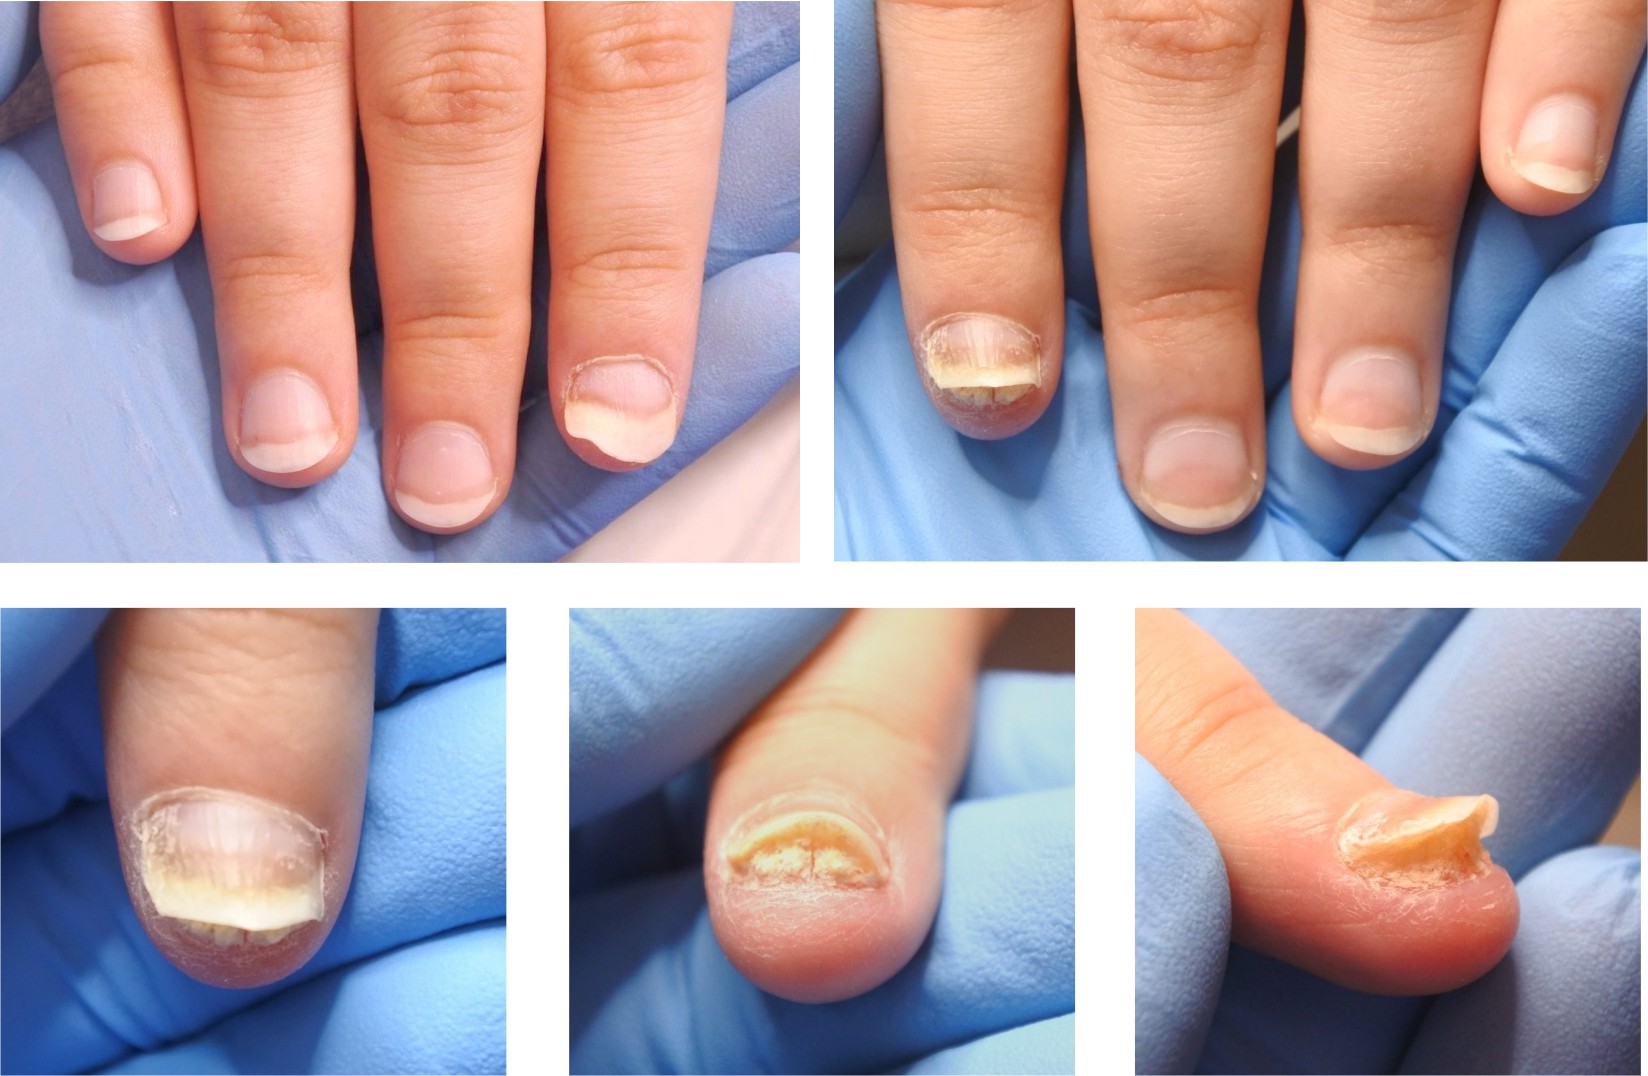 Пример торпидного течения псориаза на ногтевых пластинах кистей рук - несколько примеров.jpg